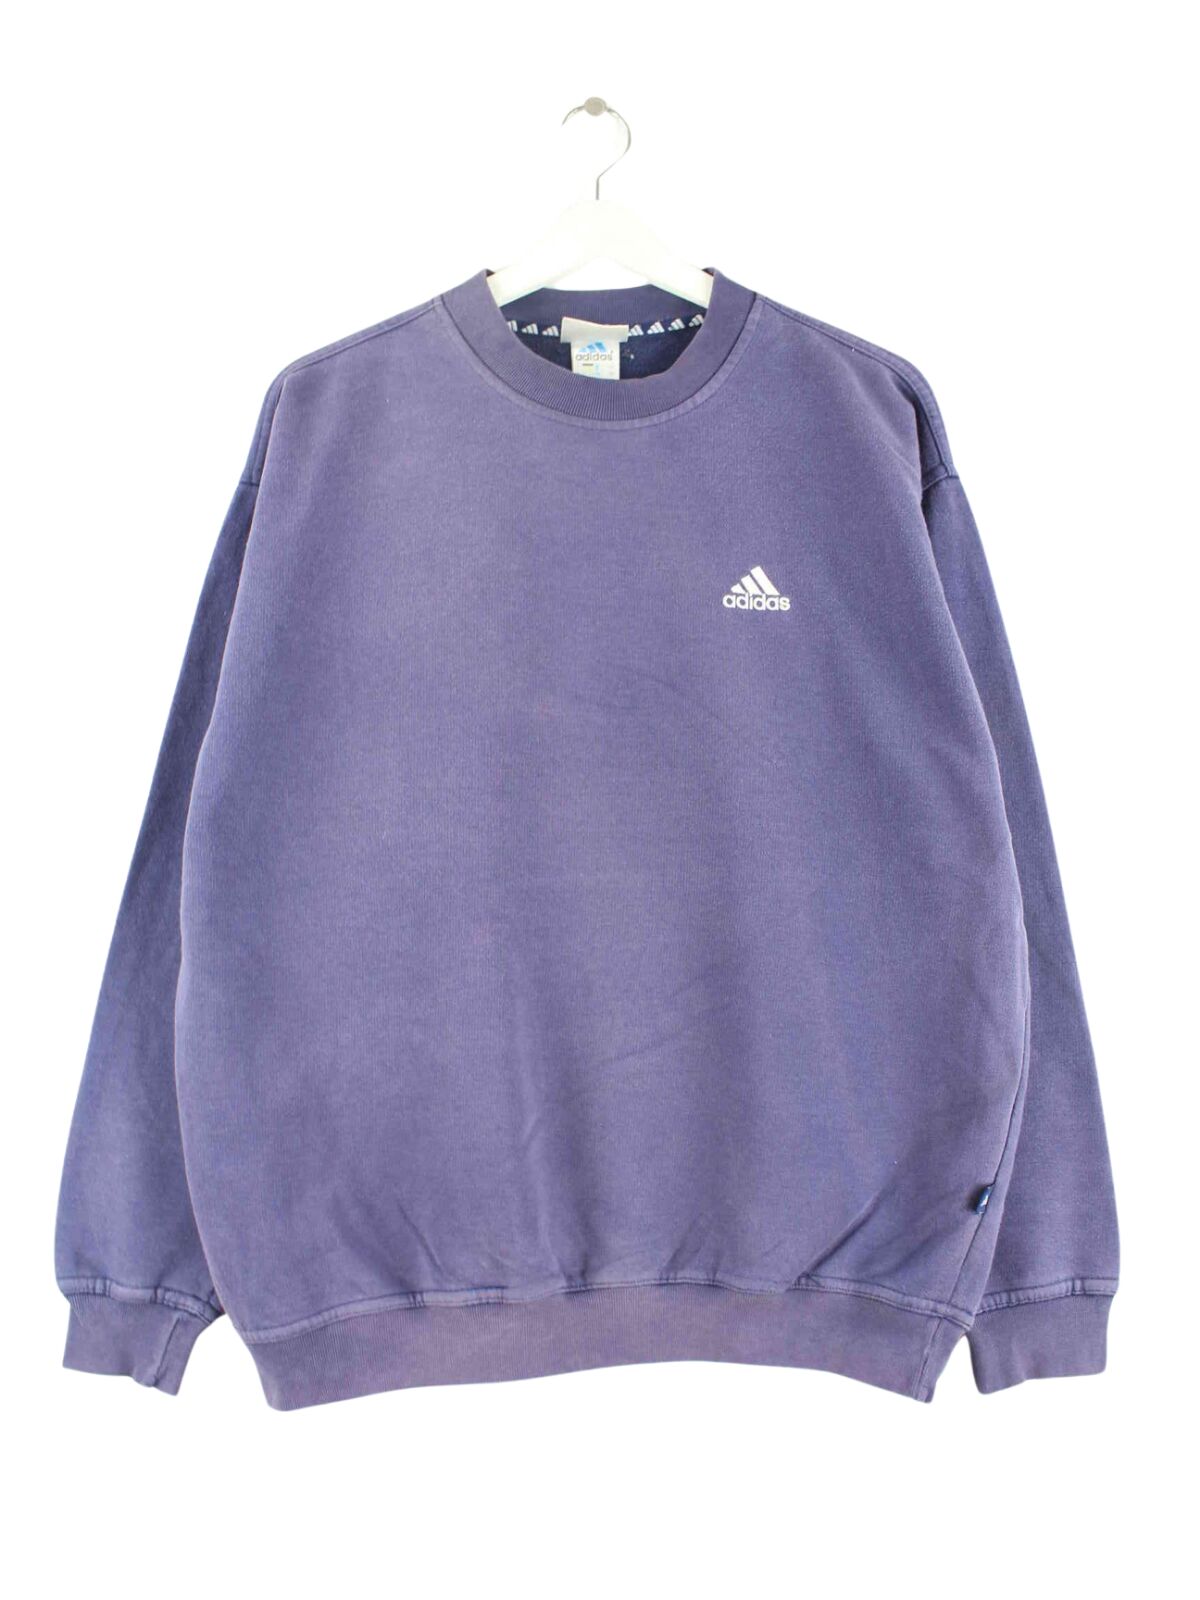 Adidas 90s Vintage Basic Sweater Blau M (front image)